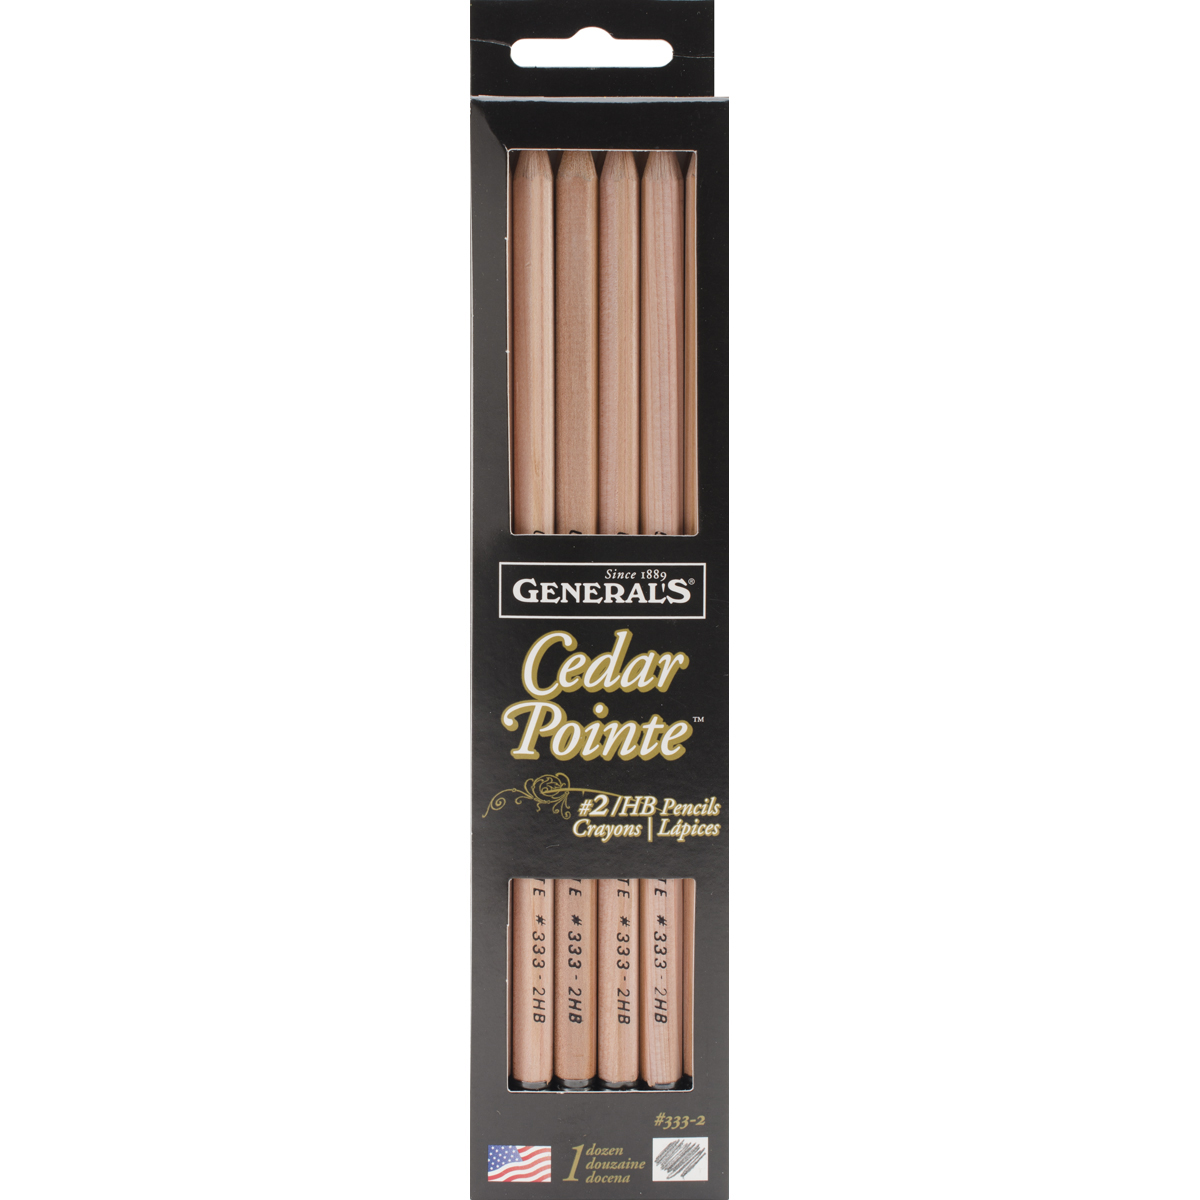 General Pencil Cedar Pointe Graphite Soft #2 Pencils 12/Pkg3332 - Bild 1 von 1